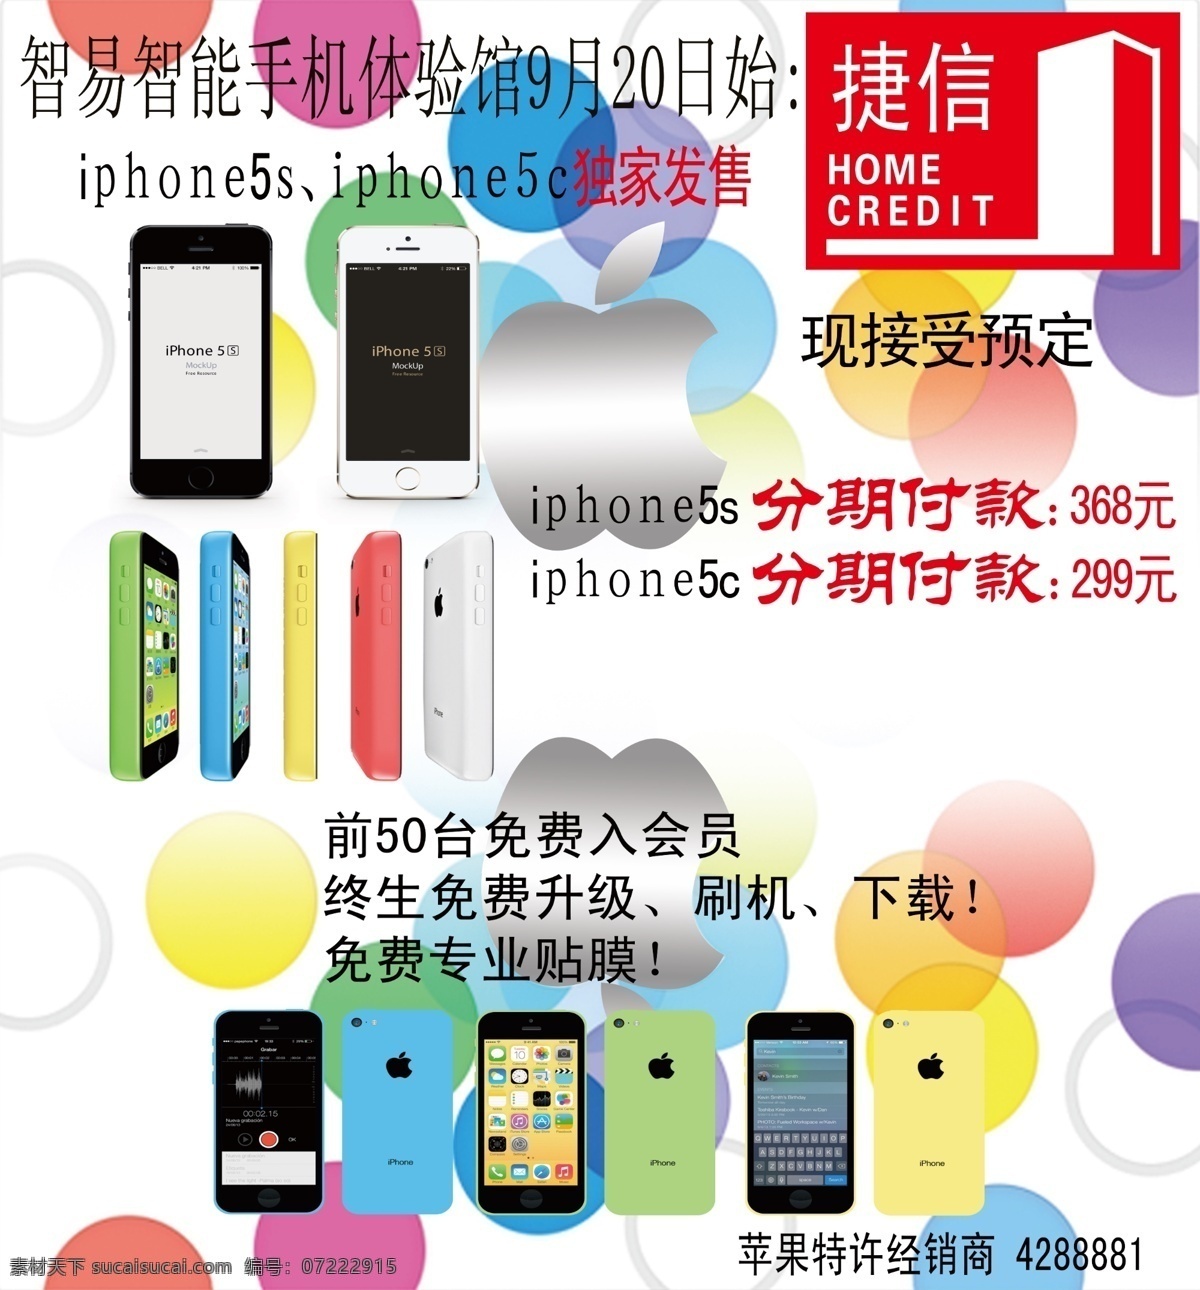 手机 分期付款 海报 iphone5s iphone5c 苹果 苹果促销海报 广告设计模板 源文件 白色